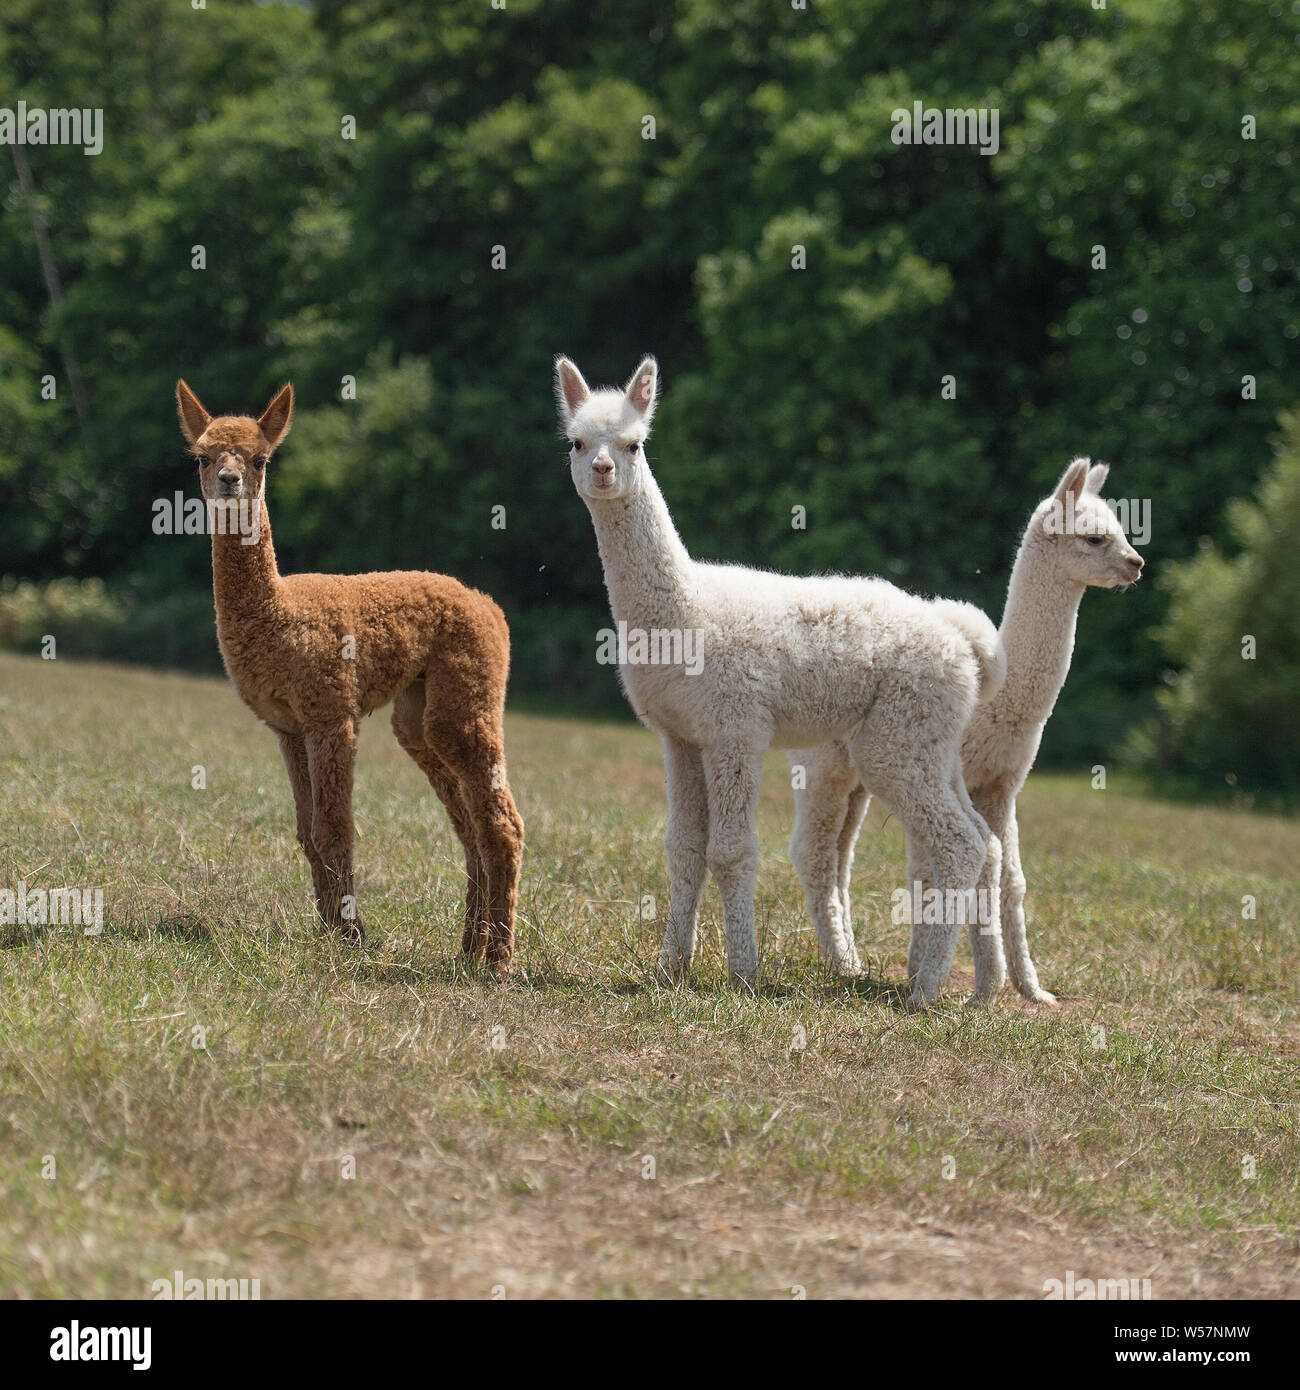 baby alpacas Stock Photo